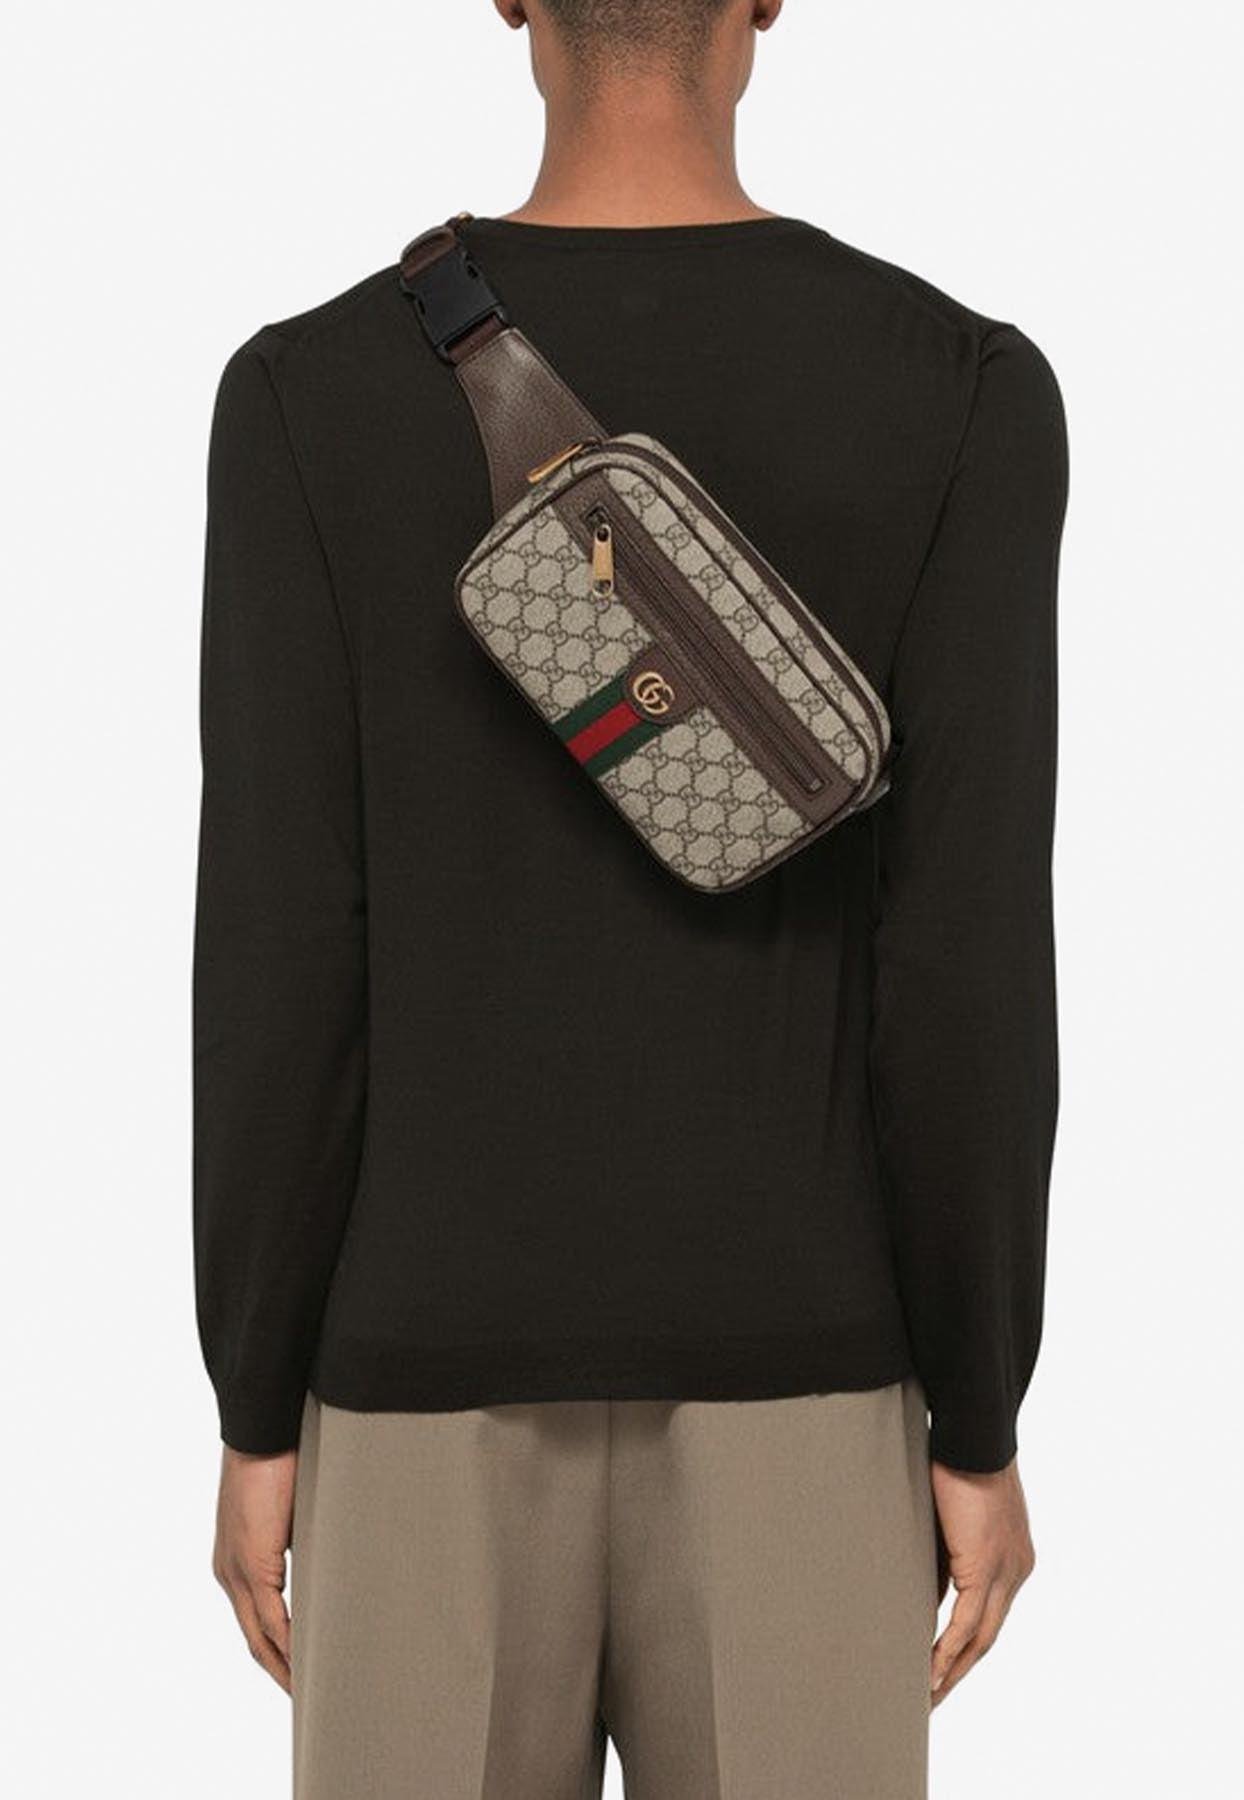 Gucci's 'Ophidia' belt bag